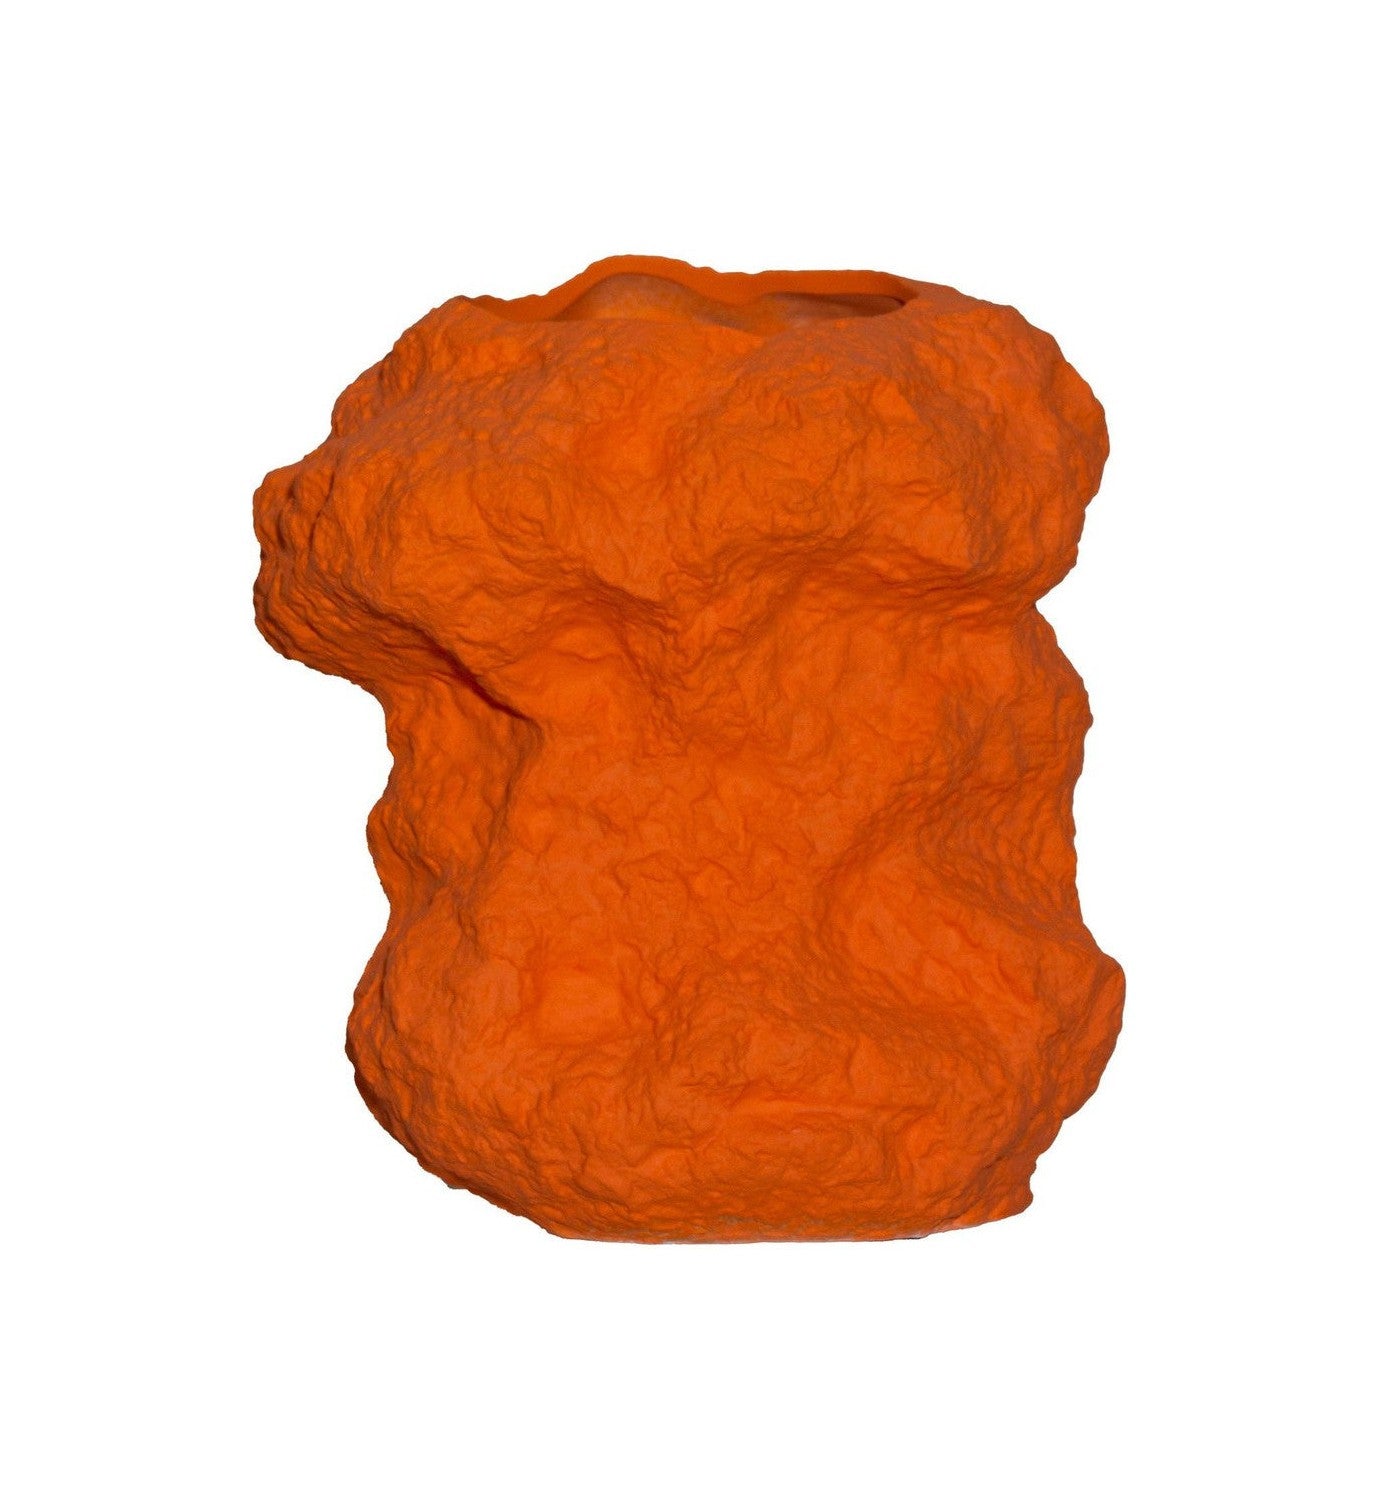 Modern design rock like vase in orange ceramic, CHU32OR